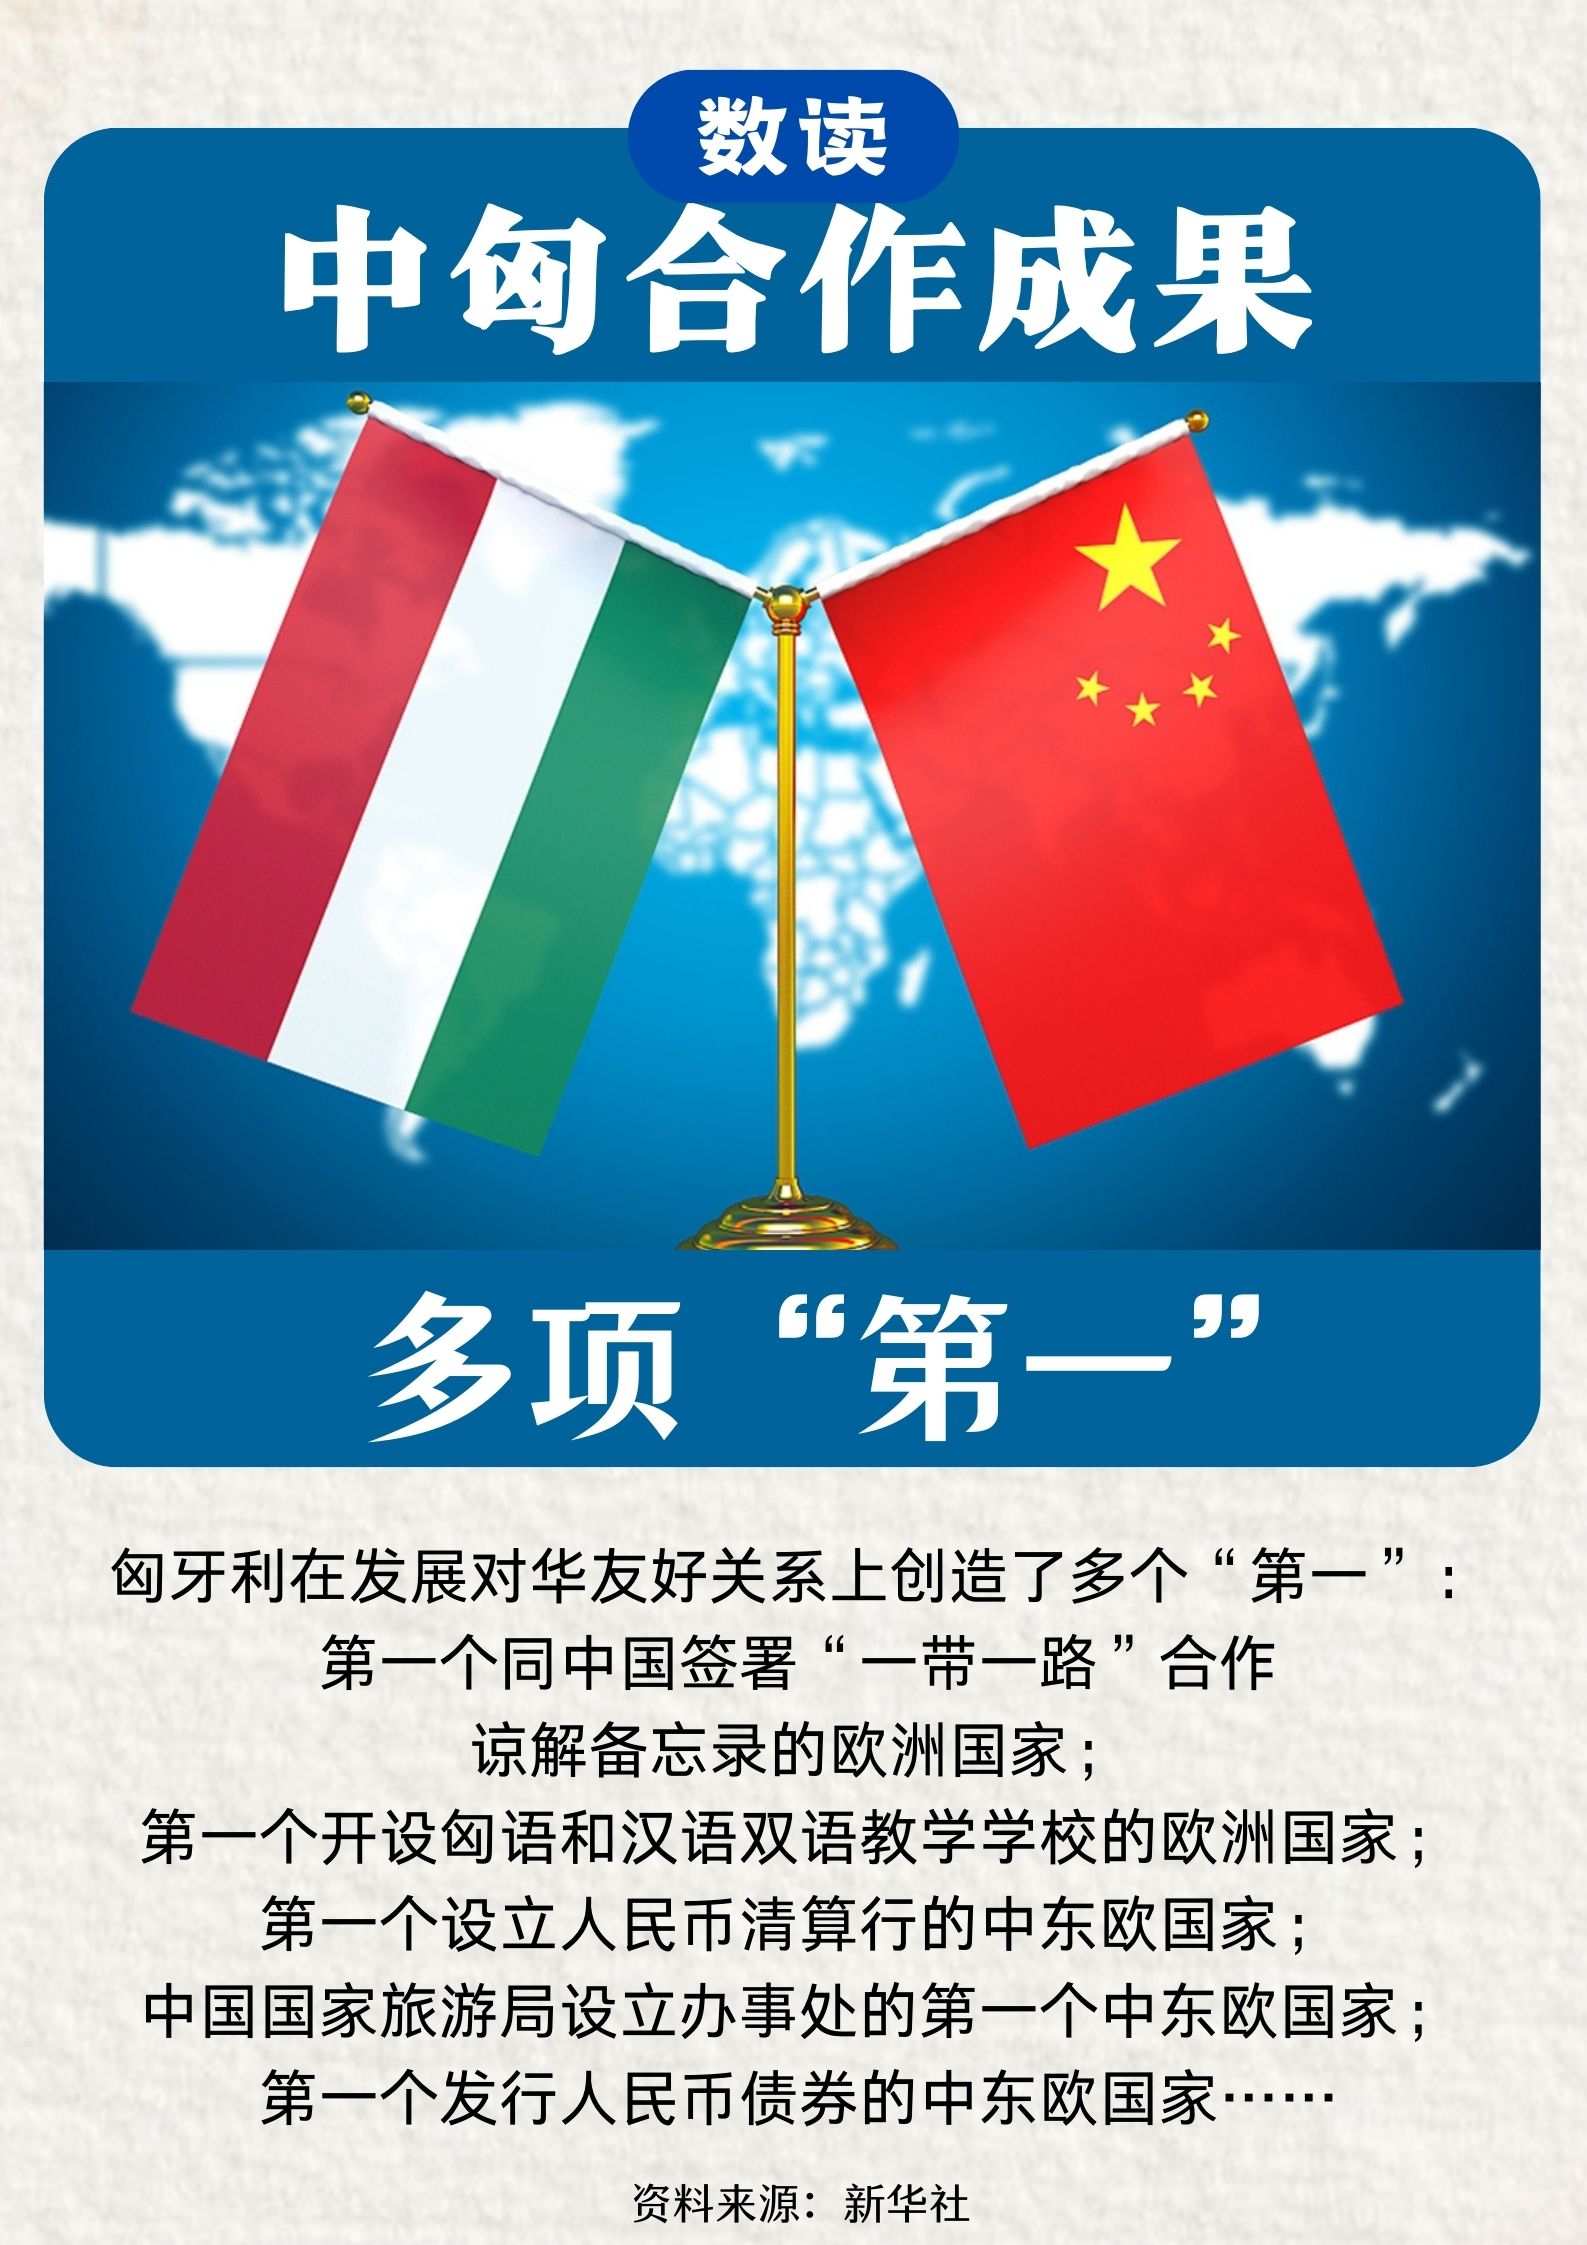 数读中国与匈牙利合作功效